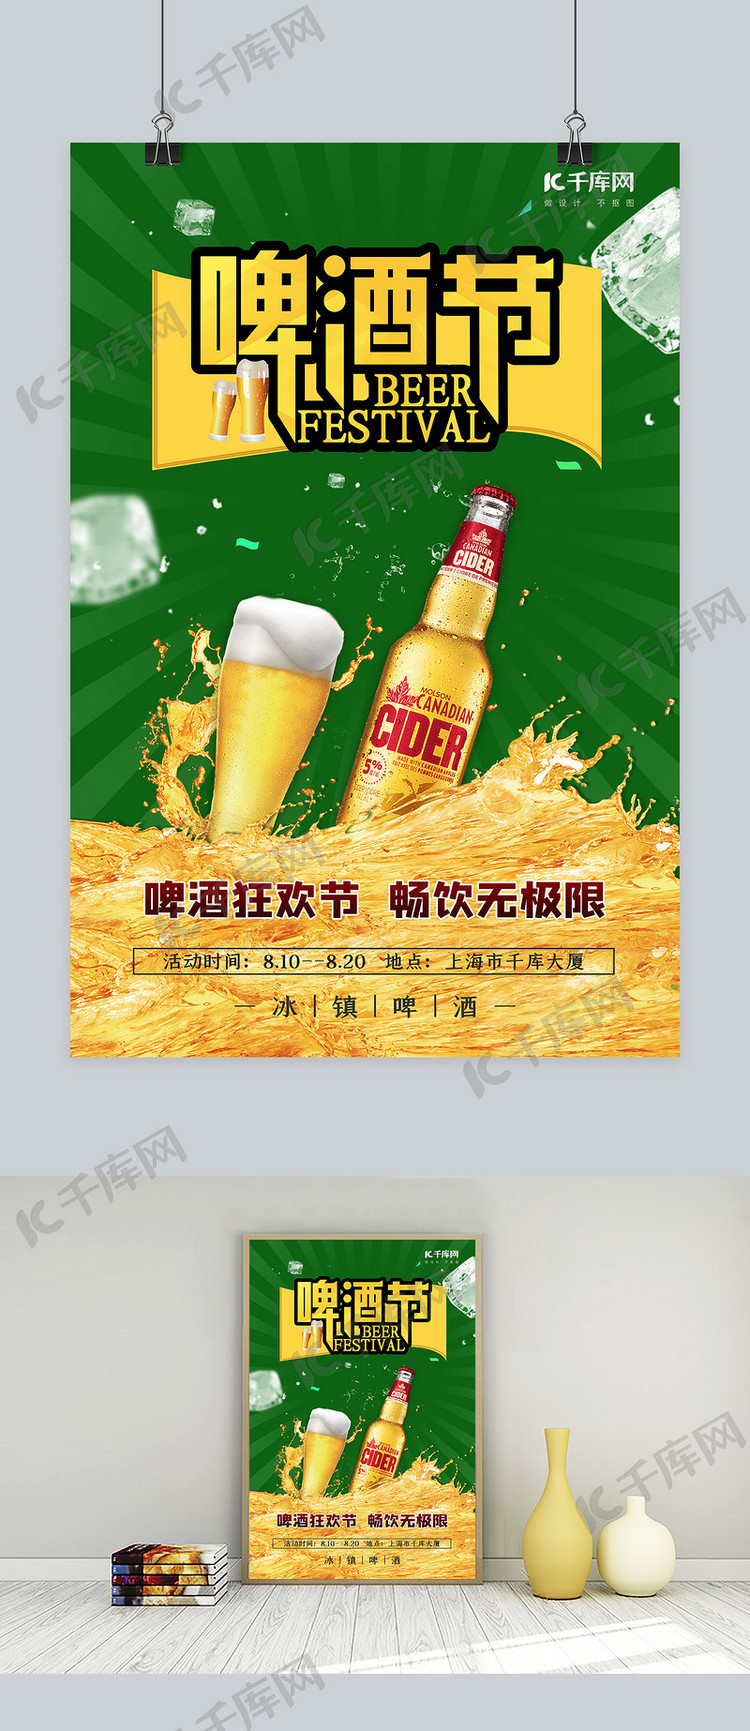 啤酒节啤酒绿色简约海报